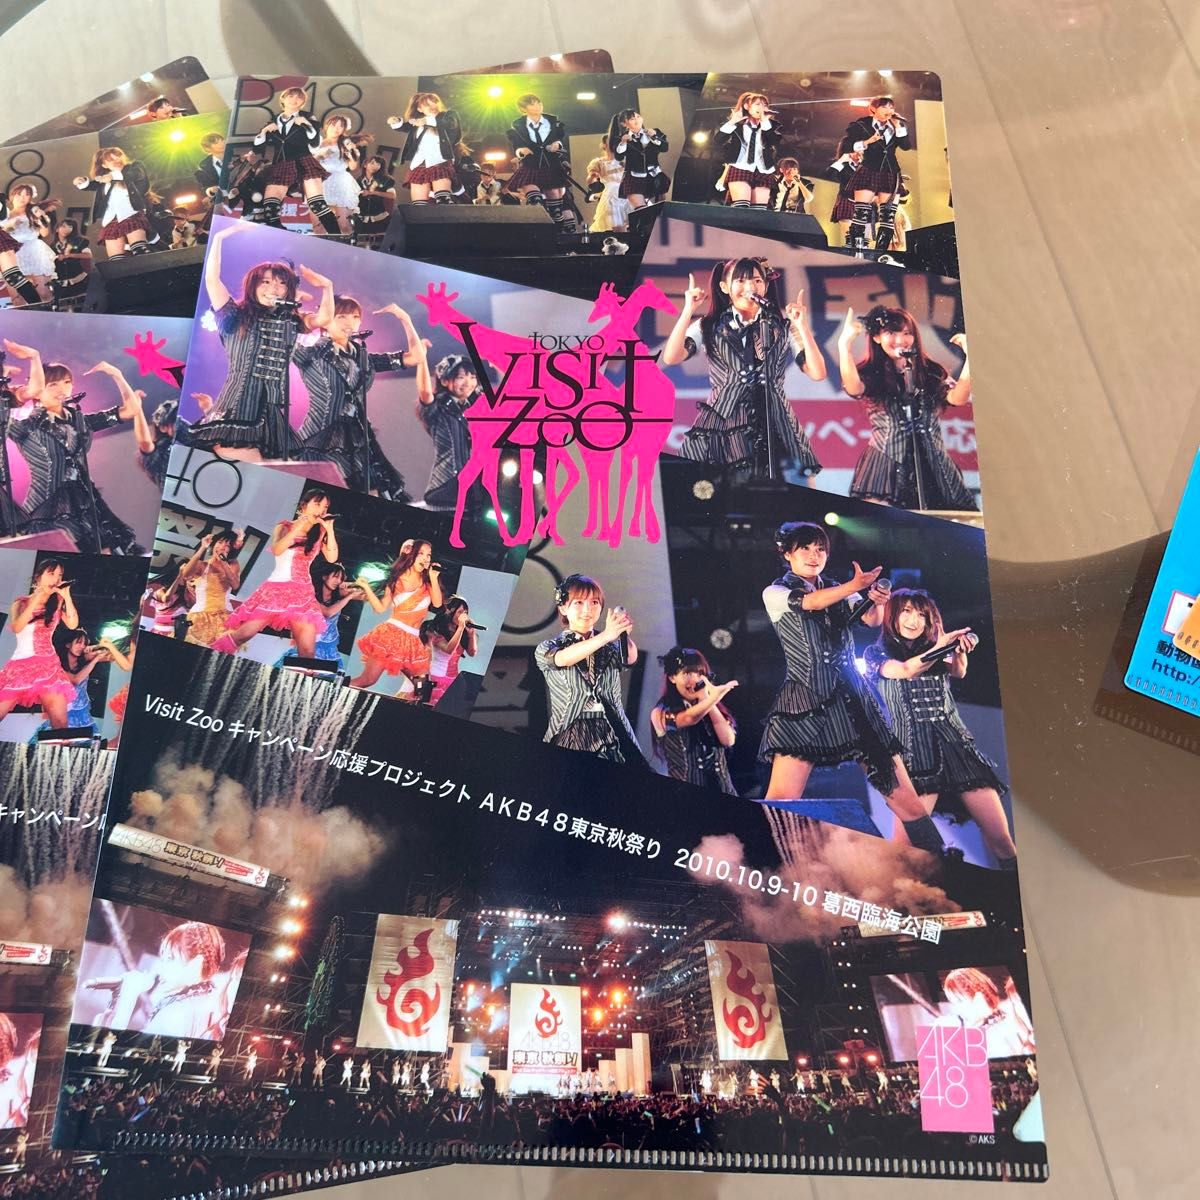 モーニング娘ビニール袋+AKB48 クリアファイル Visit Zoo キャンペーン 6点、計7点セット